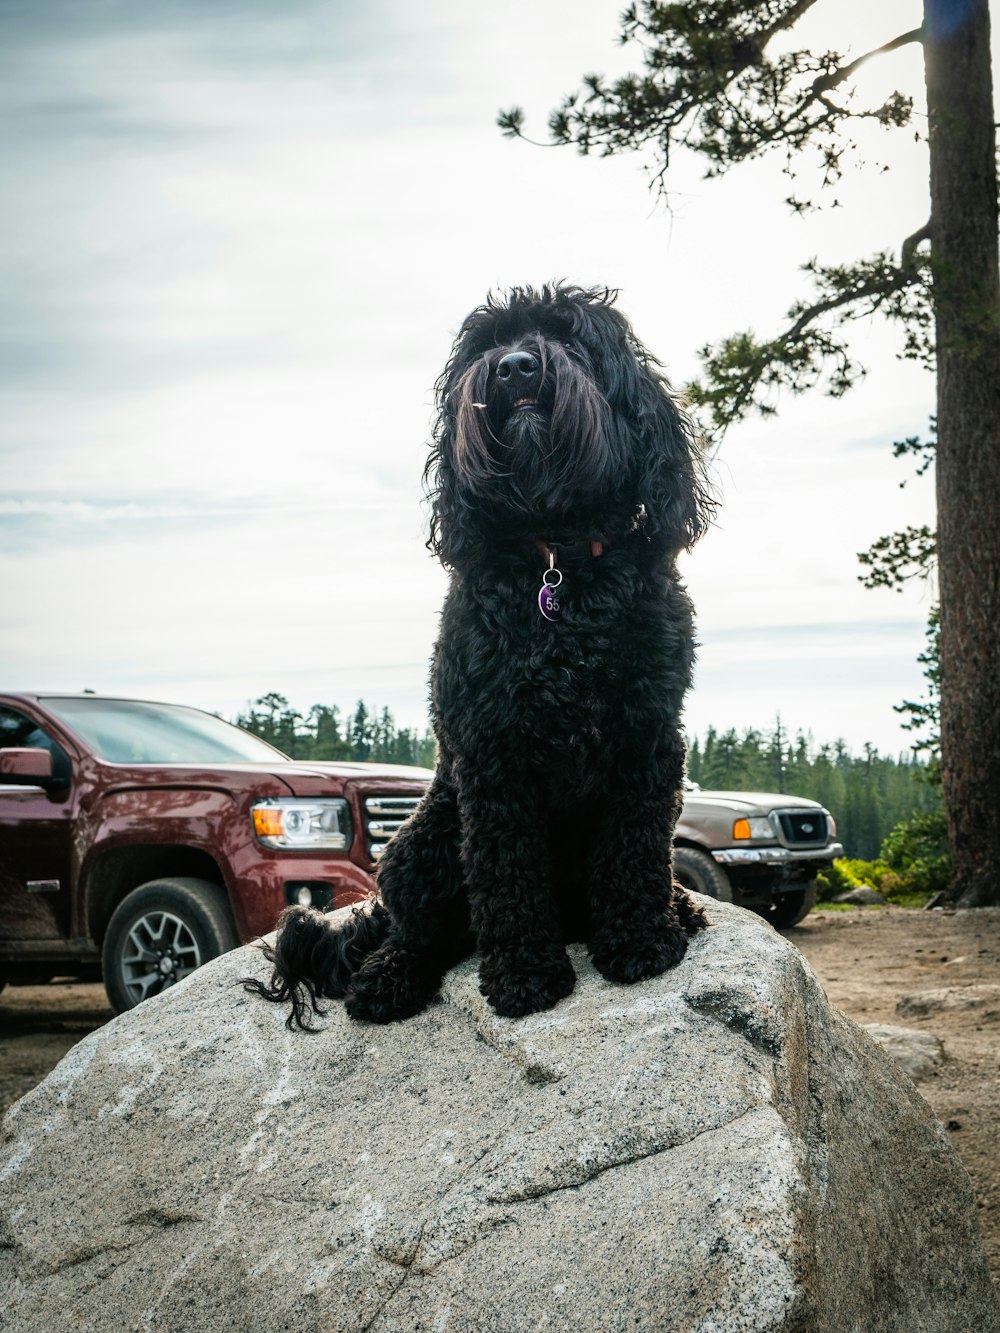 Hund sitzt auf Felsen in der Nähe von Parkfahrzeugen